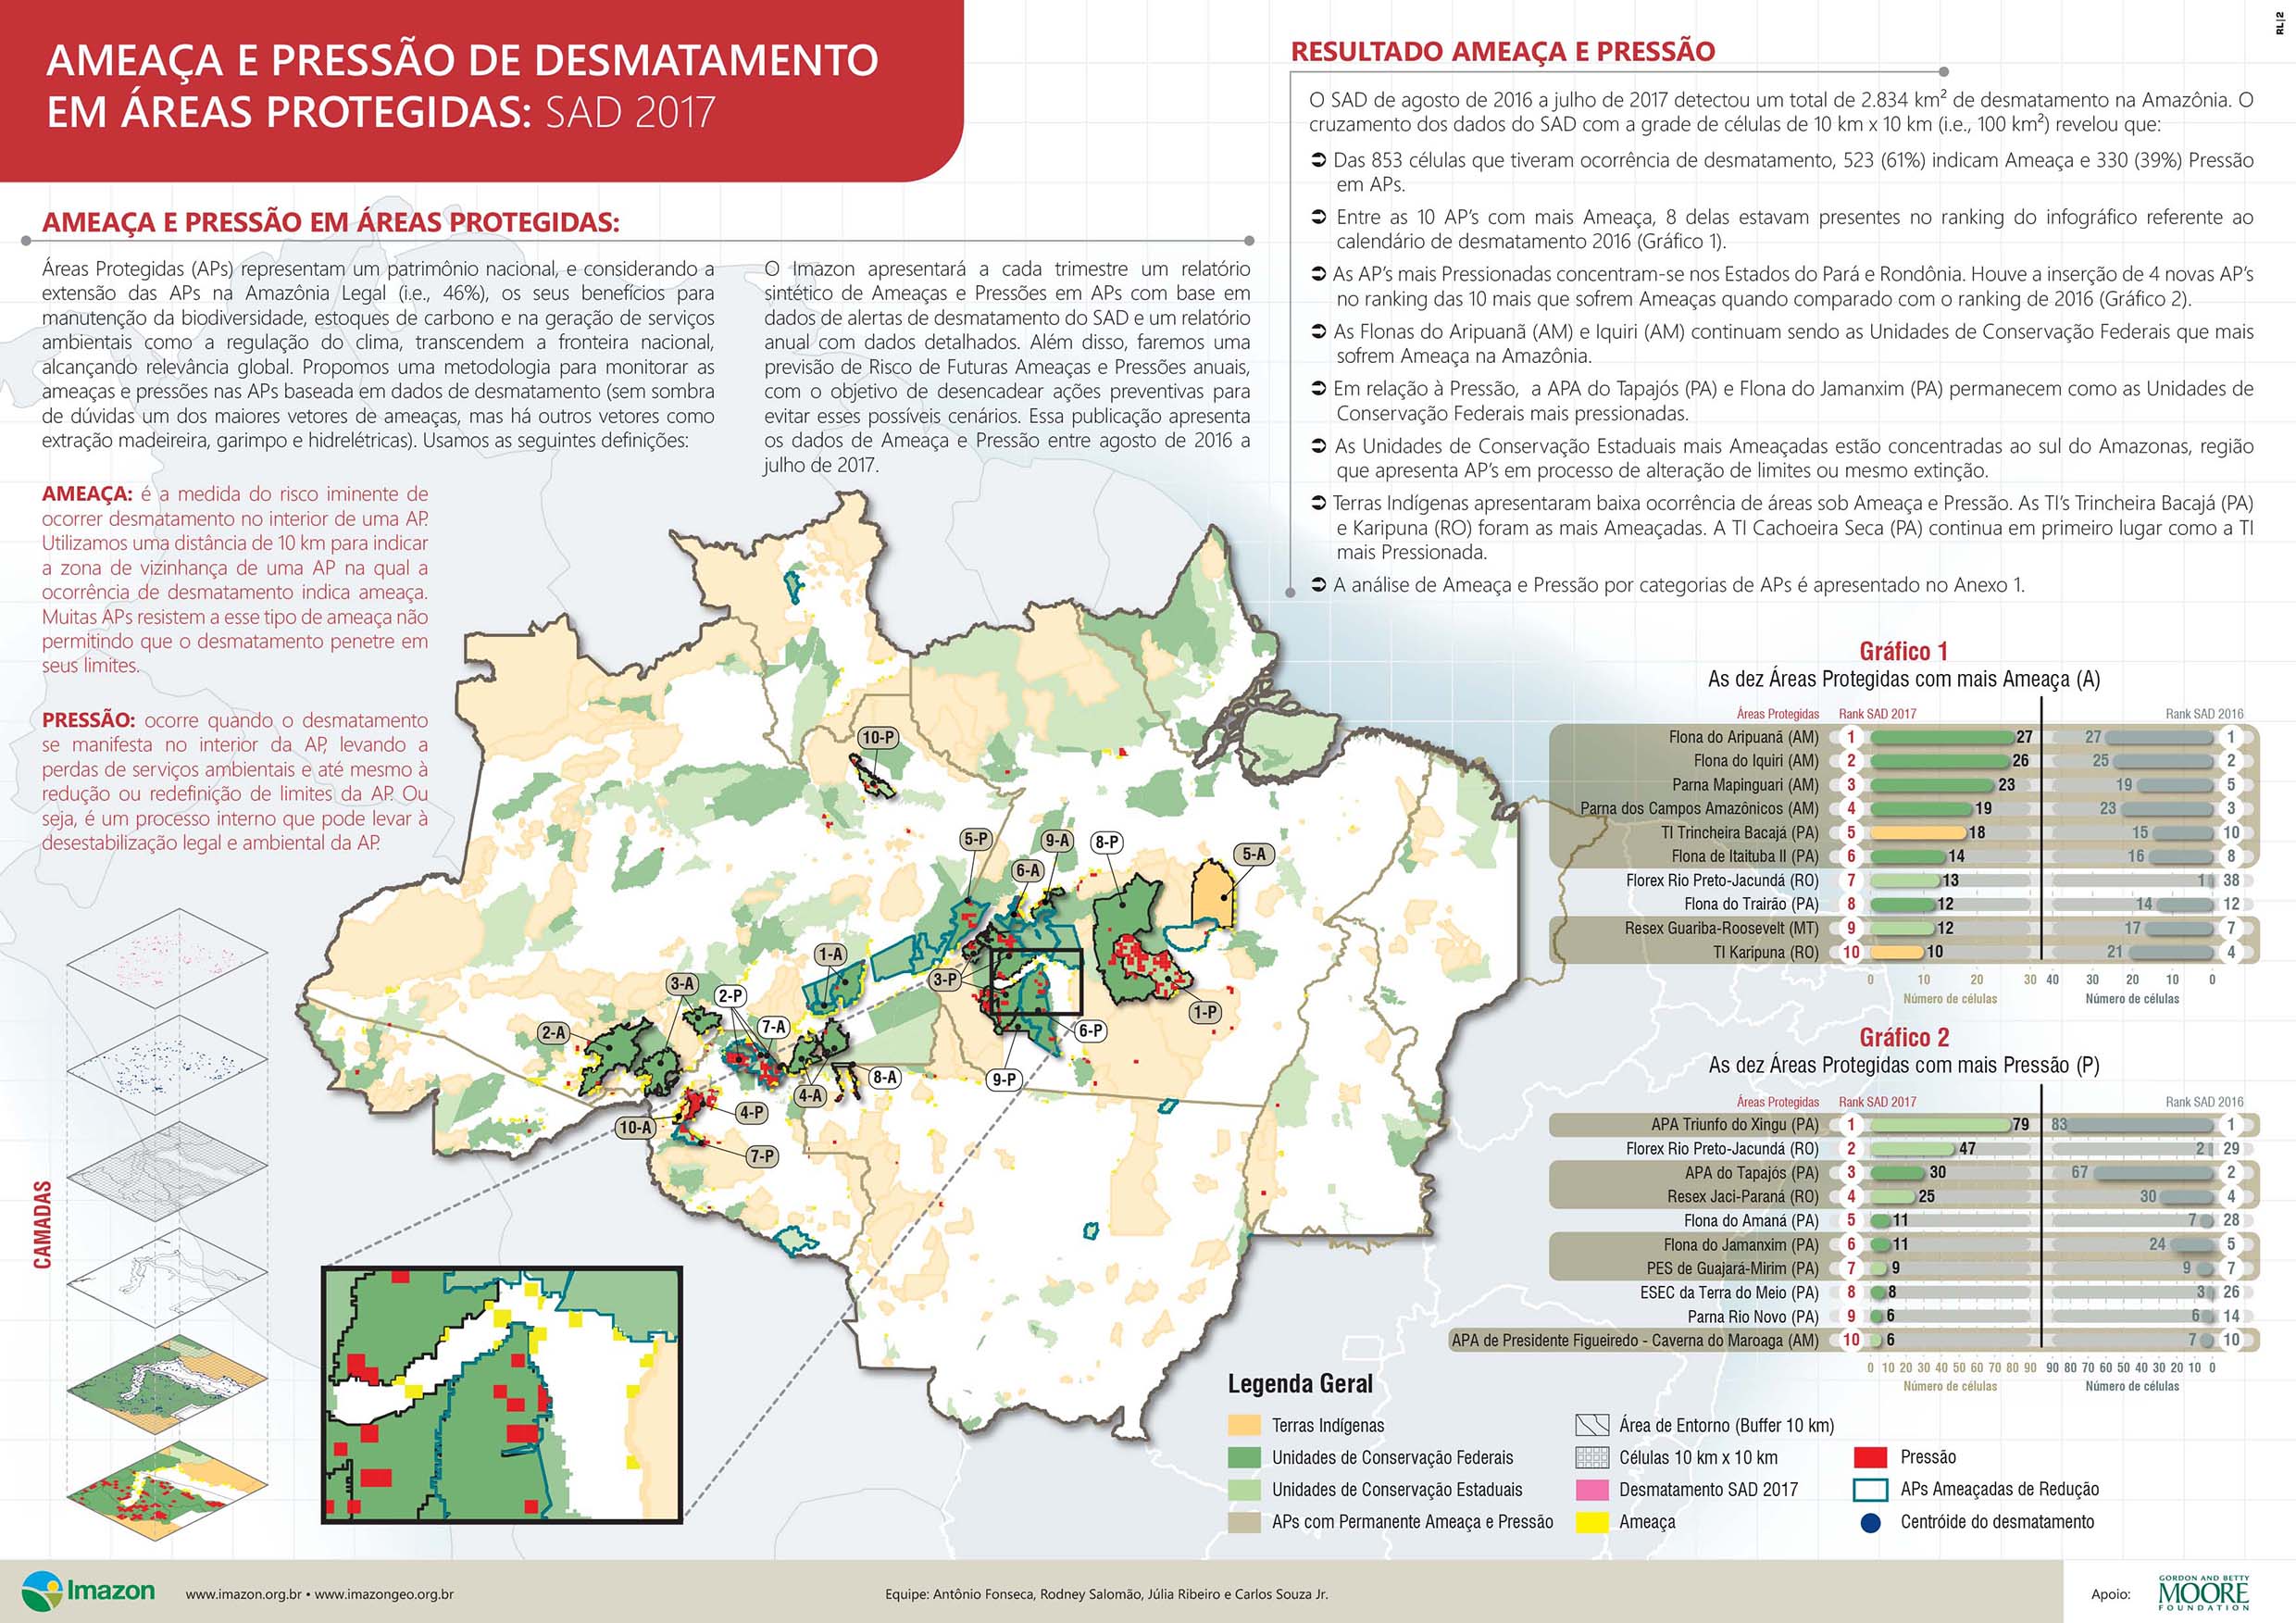 Info Ameaca e Pressao SAD 2017 011 - Ameaça e pressão de desmatamento em Áreas Protegidas: SAD 2017